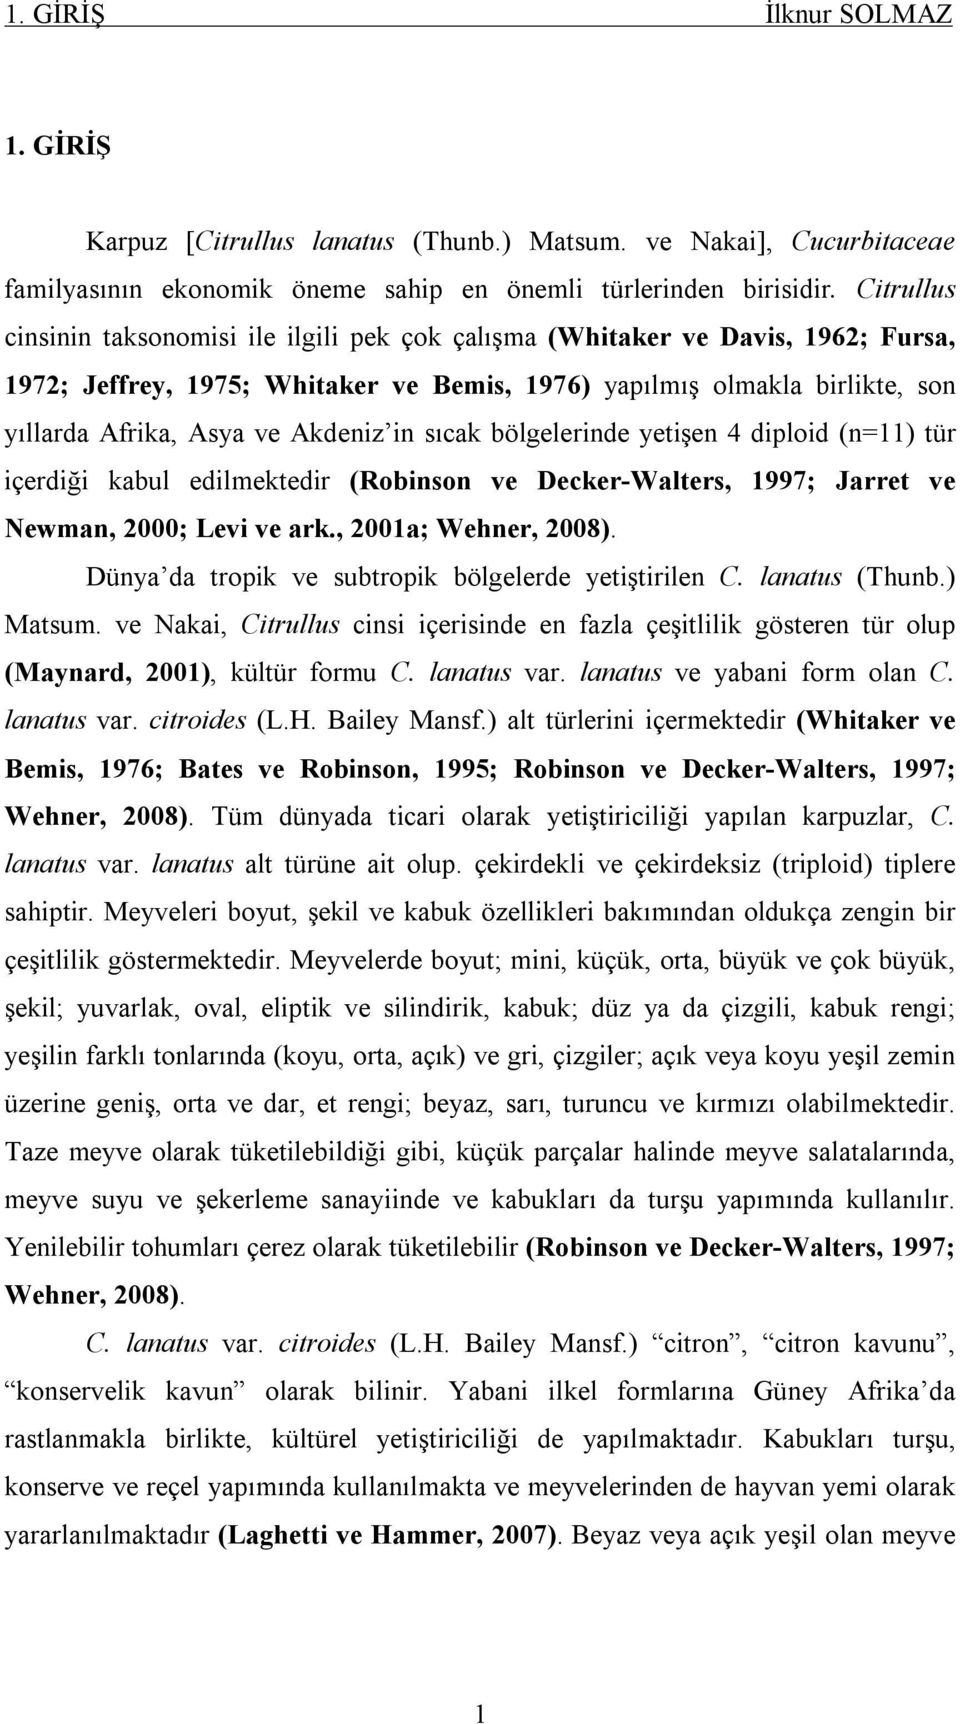 Akdeniz in sıcak bölgelerinde yetişen 4 diploid (n=11) tür içerdiği kabul edilmektedir (Robinson ve Decker-Walters, 1997; Jarret ve Newman, 2000; Levi ve ark., 2001a; Wehner, 2008).